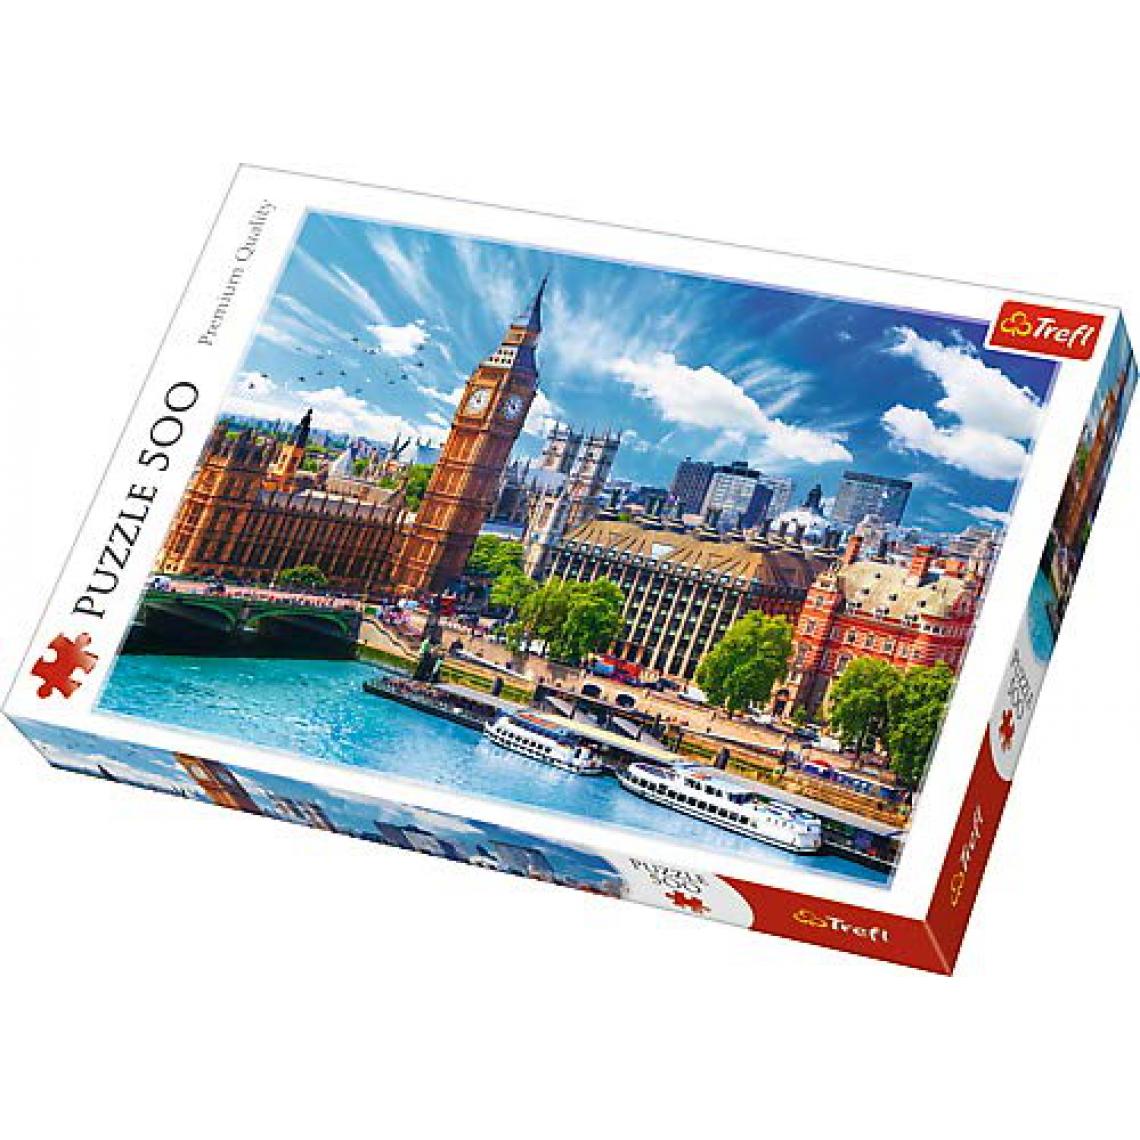 Trefl - trefl Puzzle modèle journée ensoleillée à Londres 500 pièces, 37329, Multicolore - Animaux